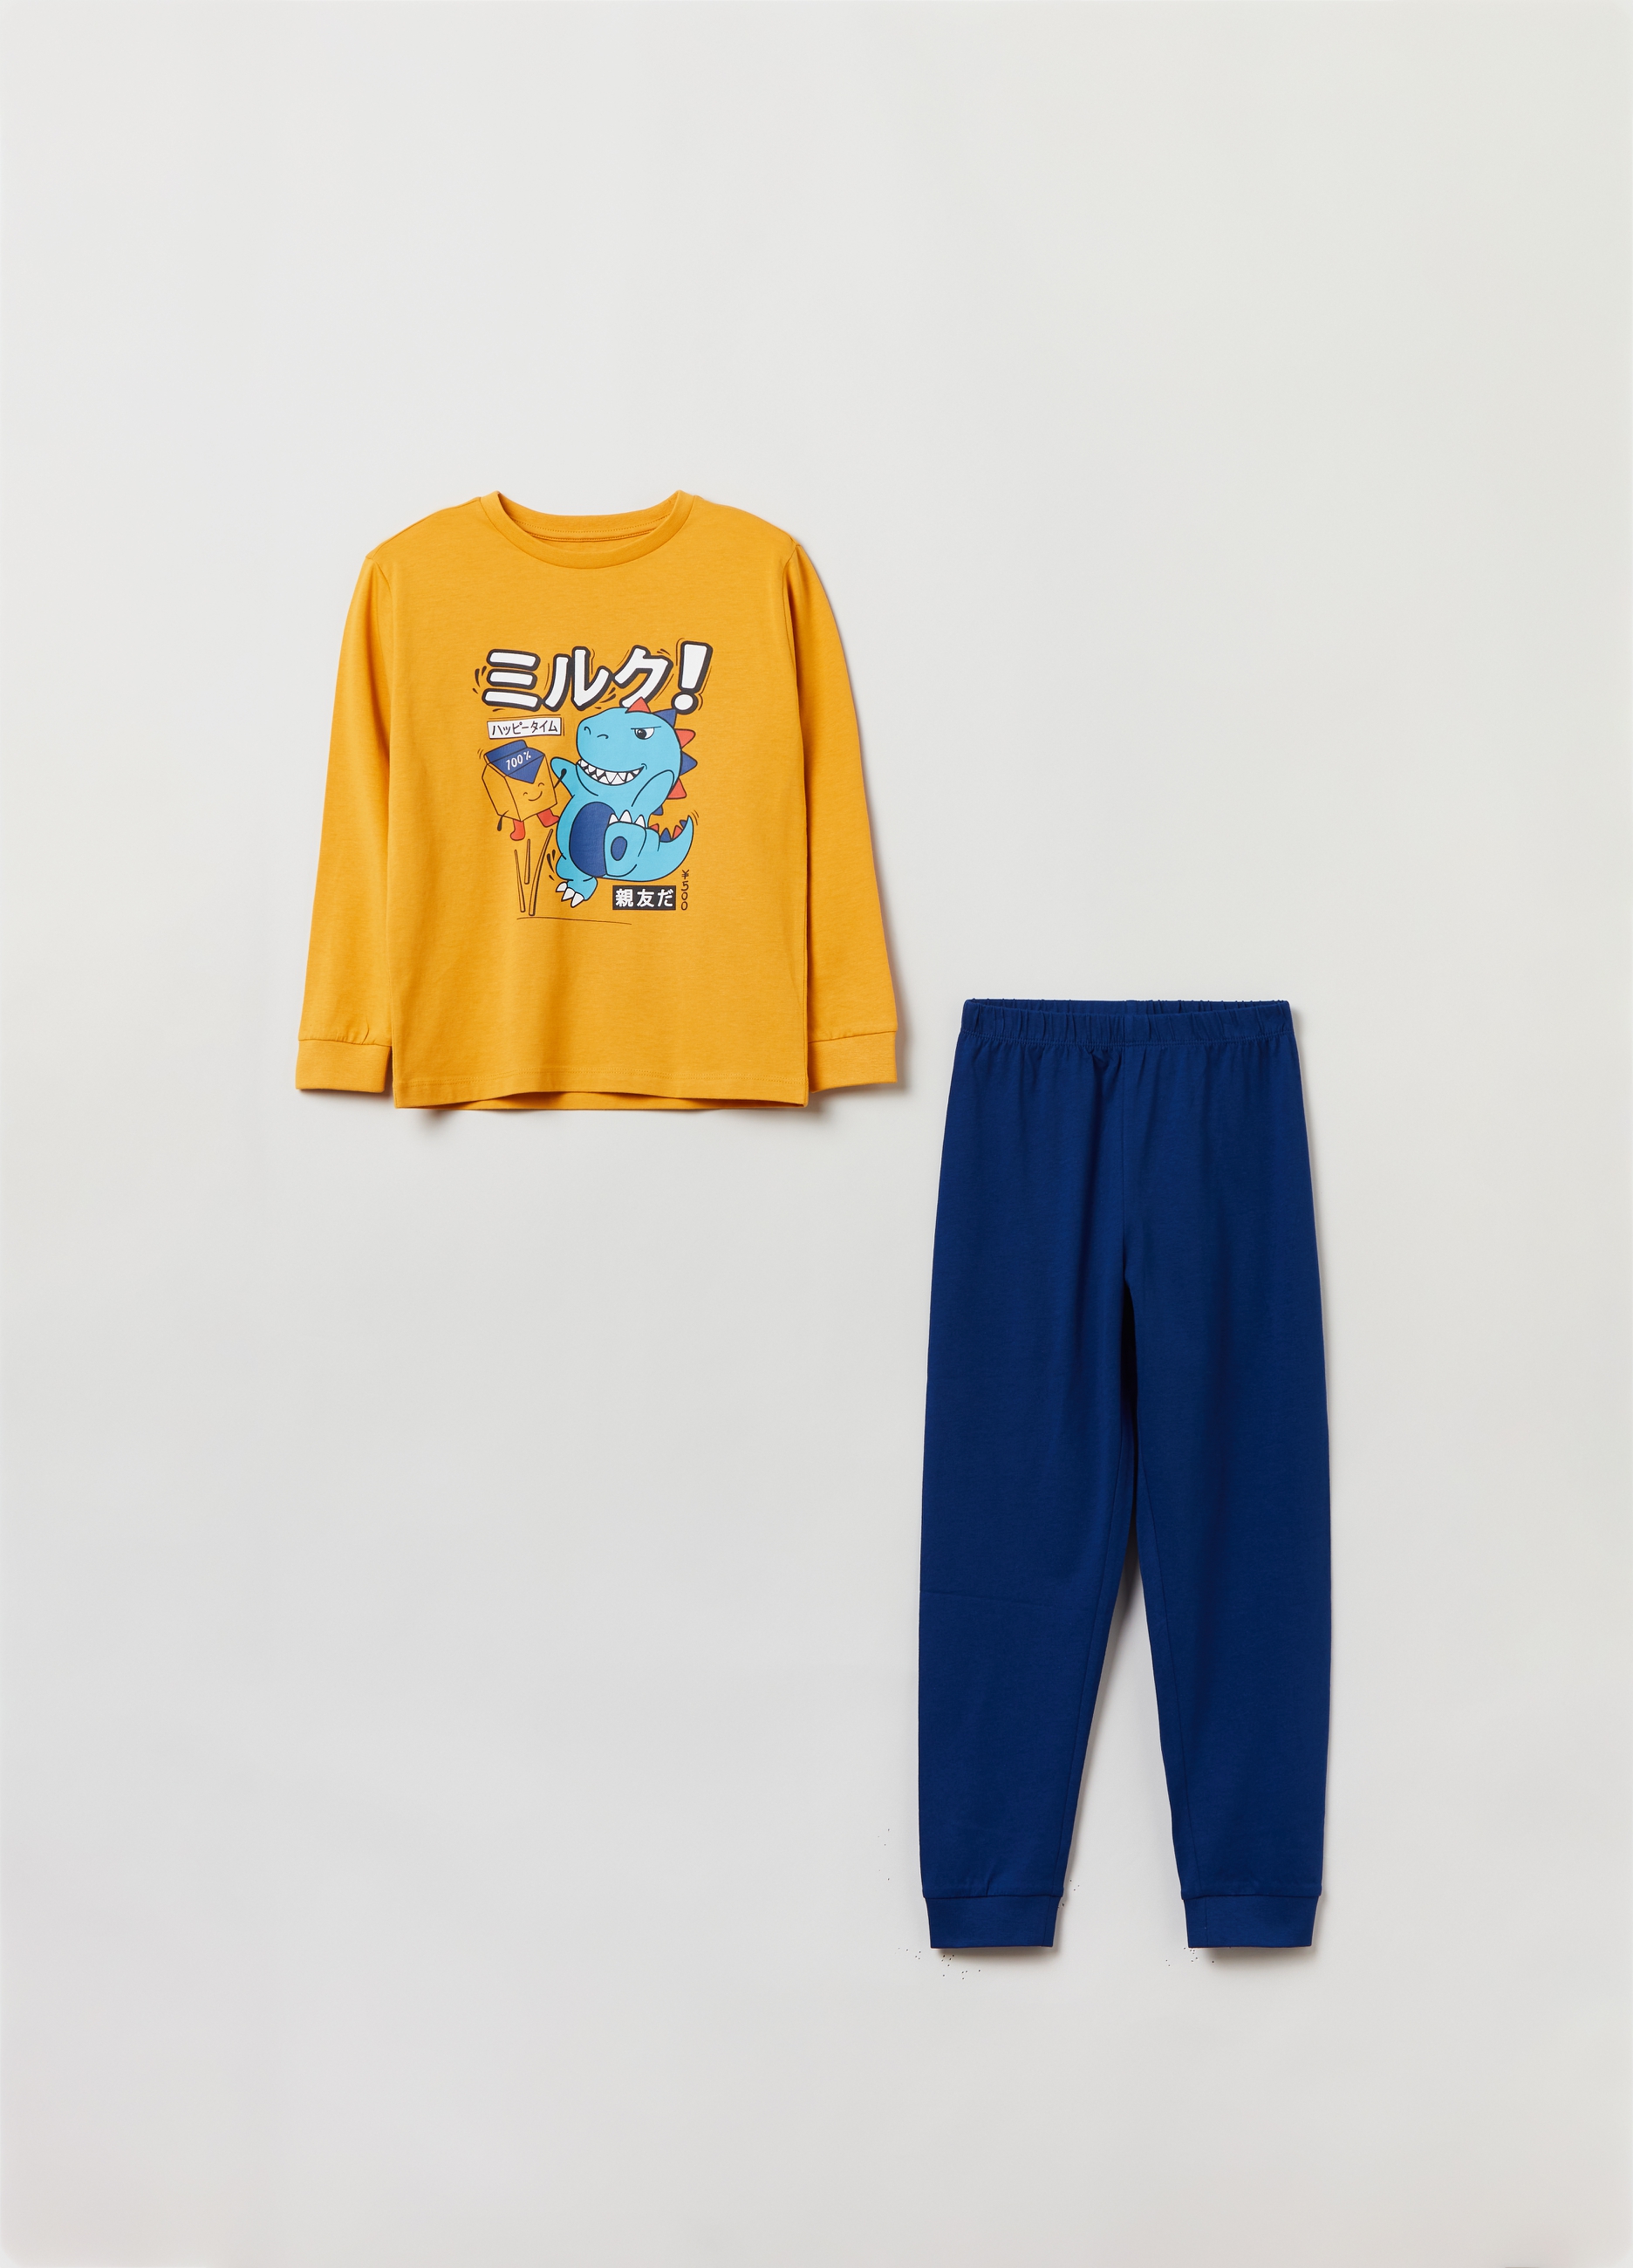 Пижама OVS для мальчиков, желтая, 9-10 лет, 1825641